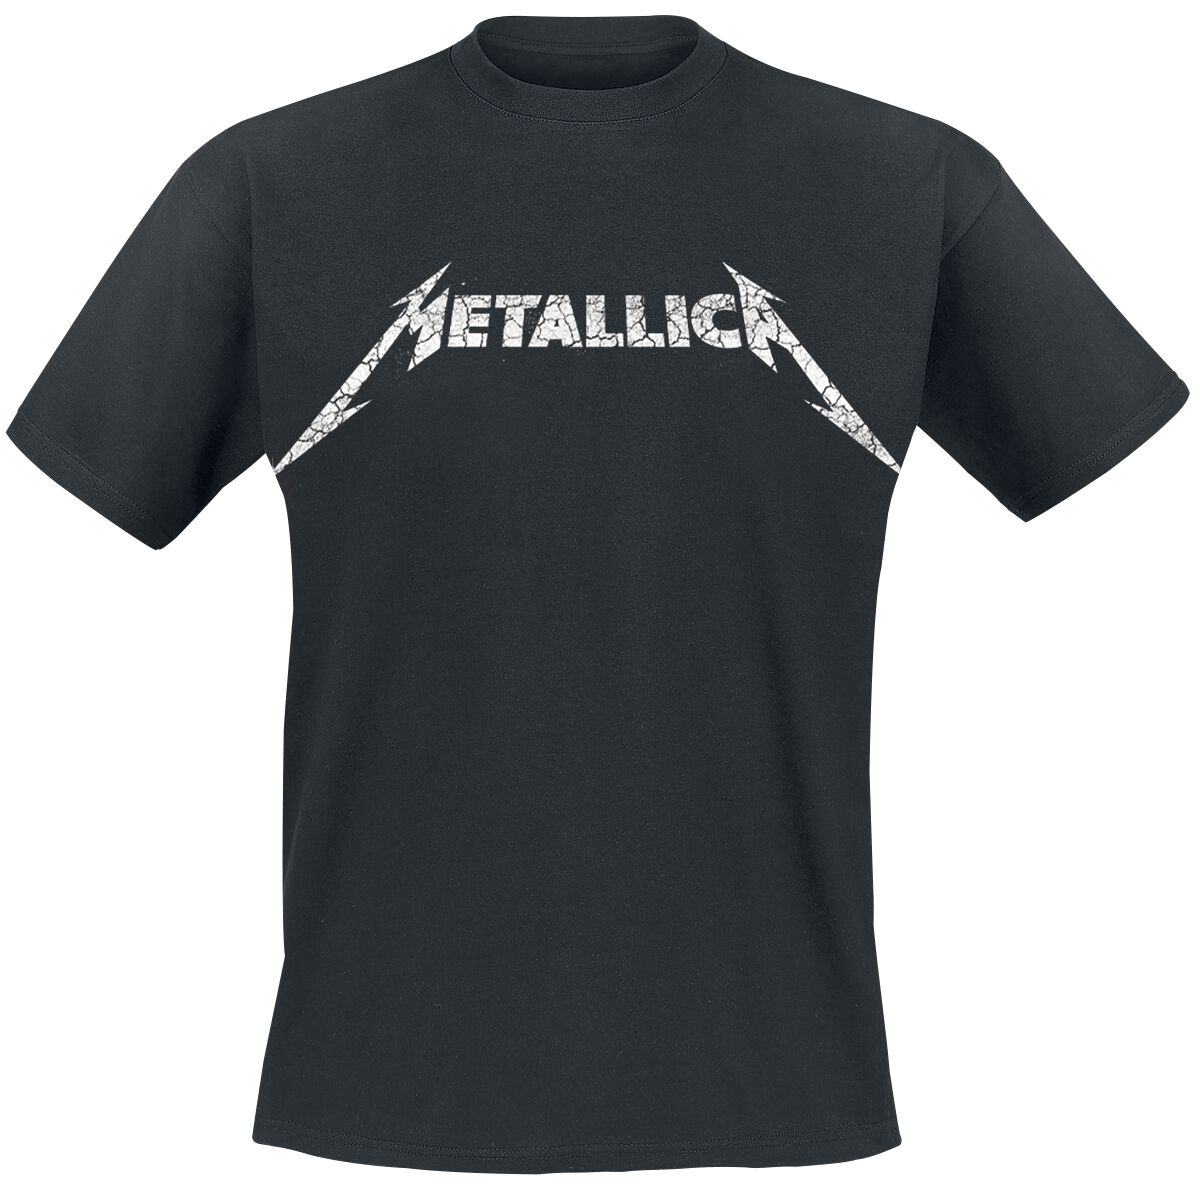 Metallica T-Shirt - Kill Ride Master - S bis 5XL - für Männer - Größe 5XL - schwarz  - Lizenziertes Merchandise!